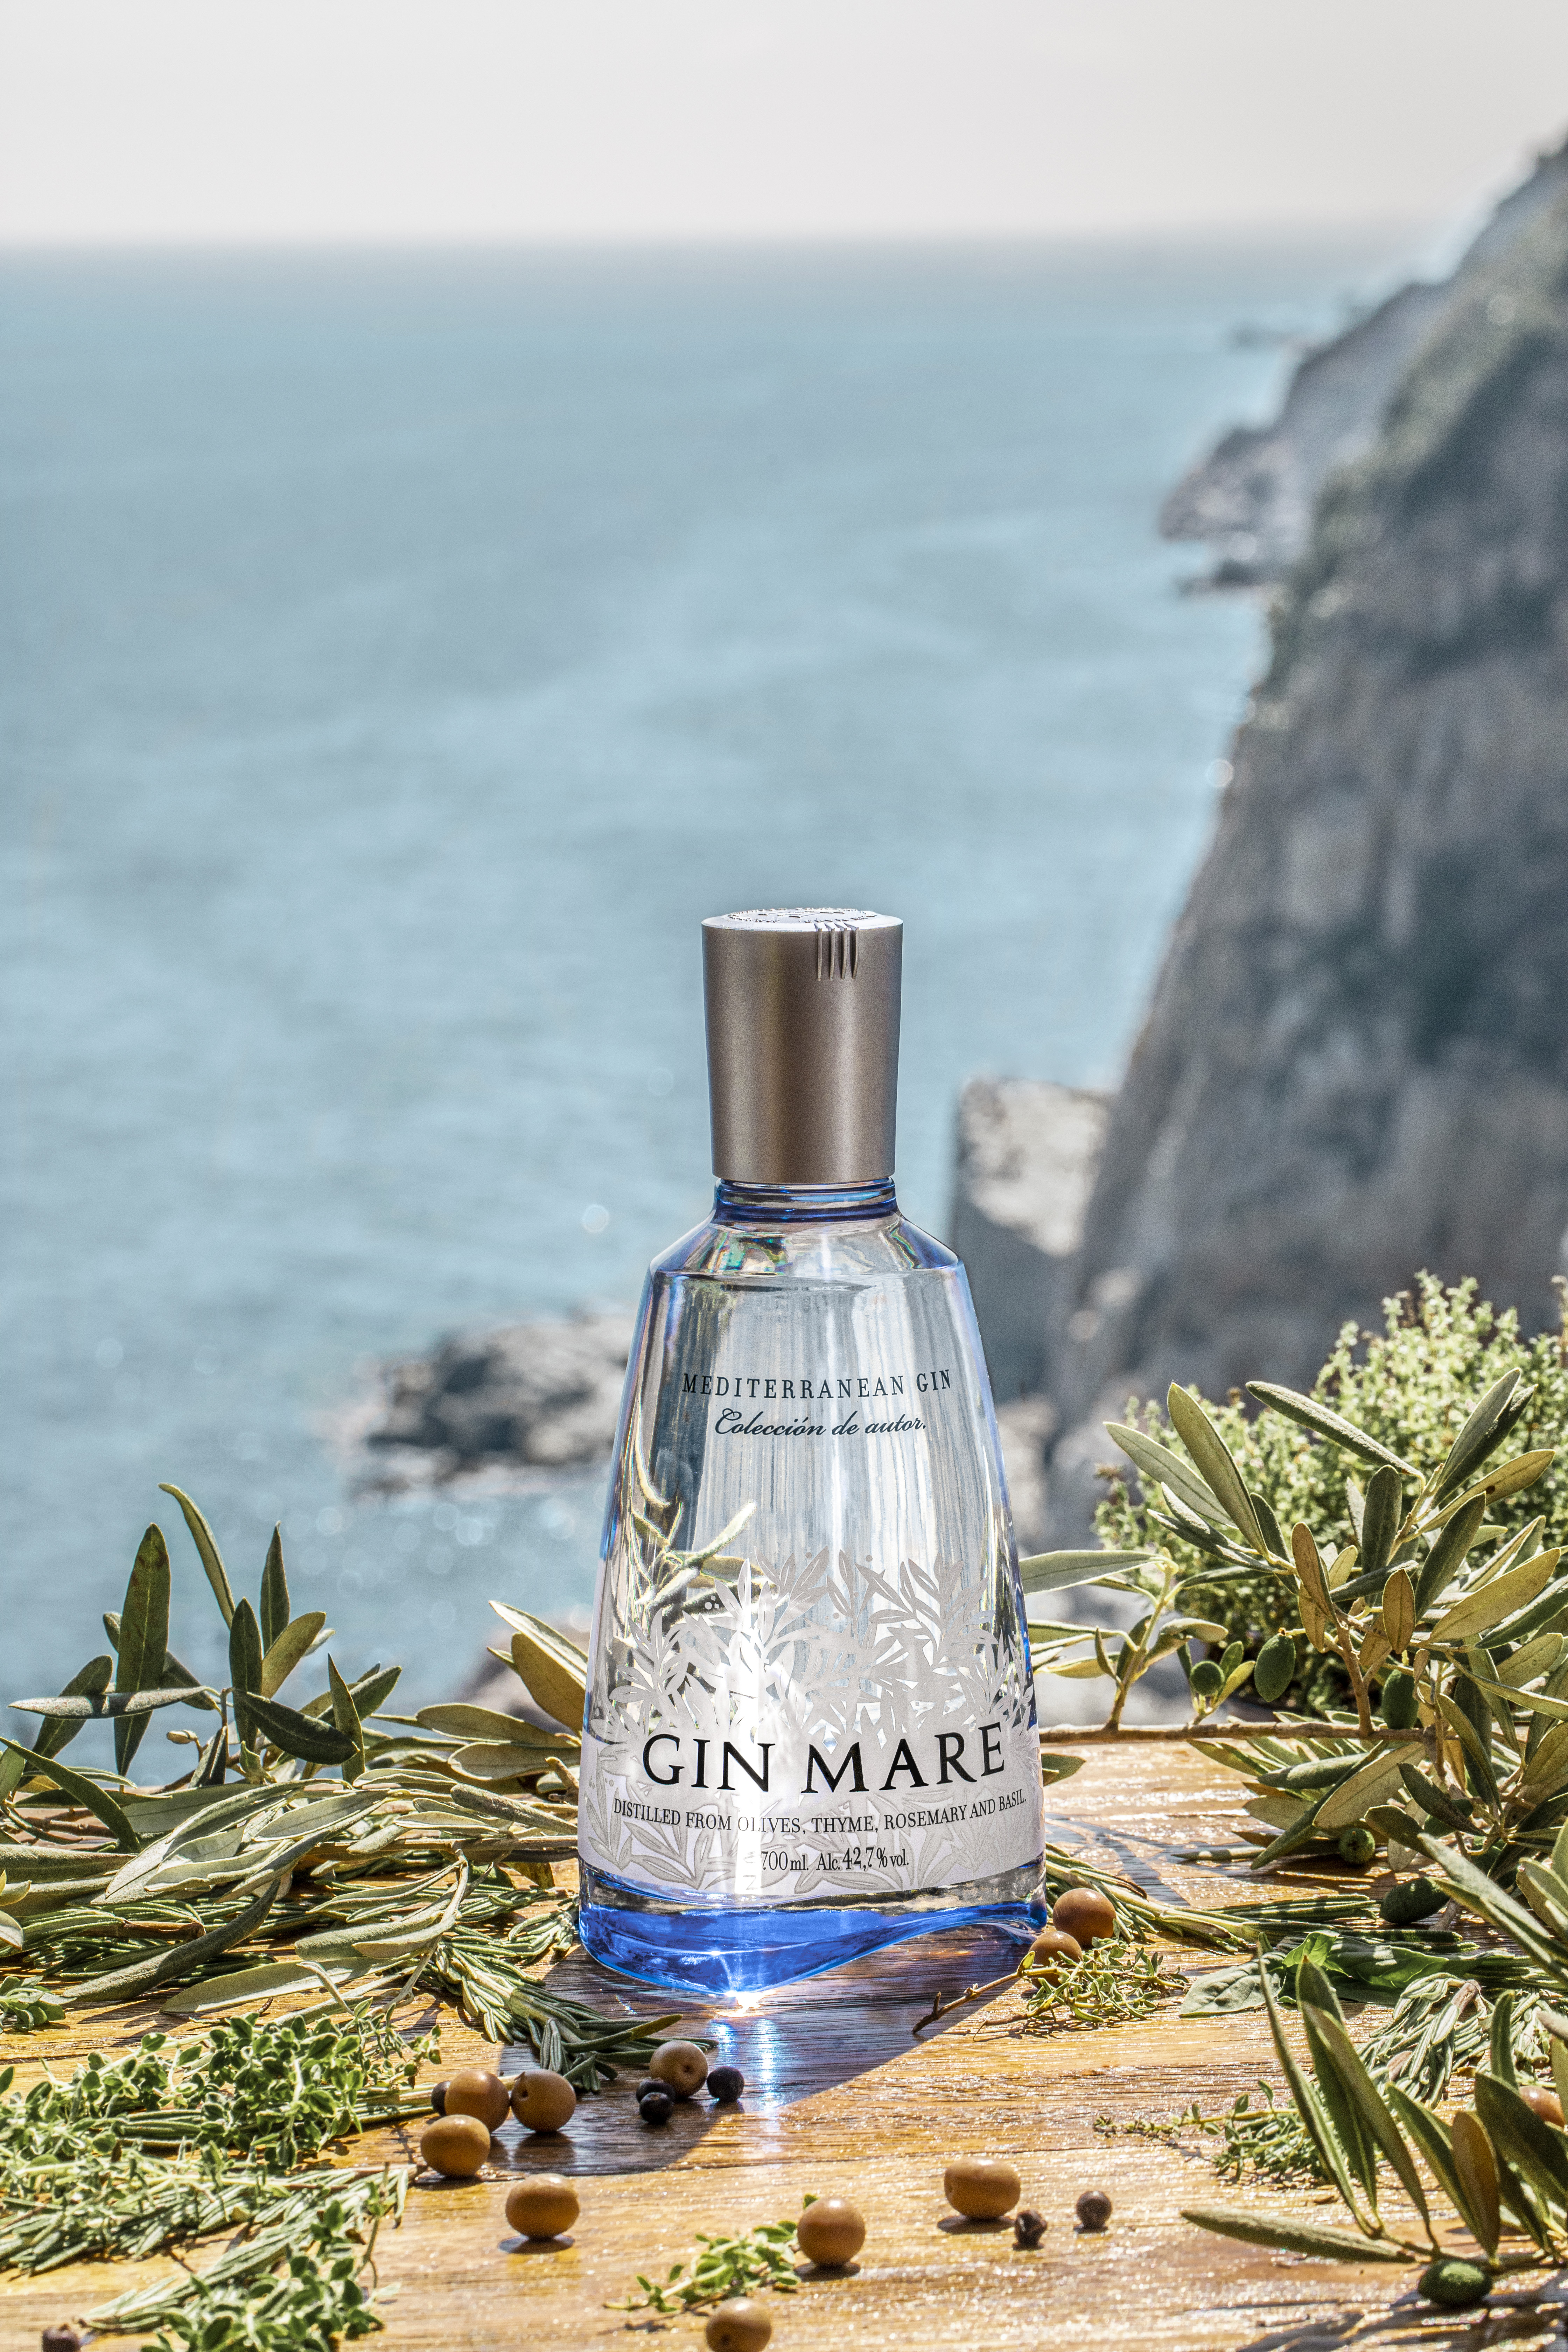 Mare Mediterranean Gin Gin